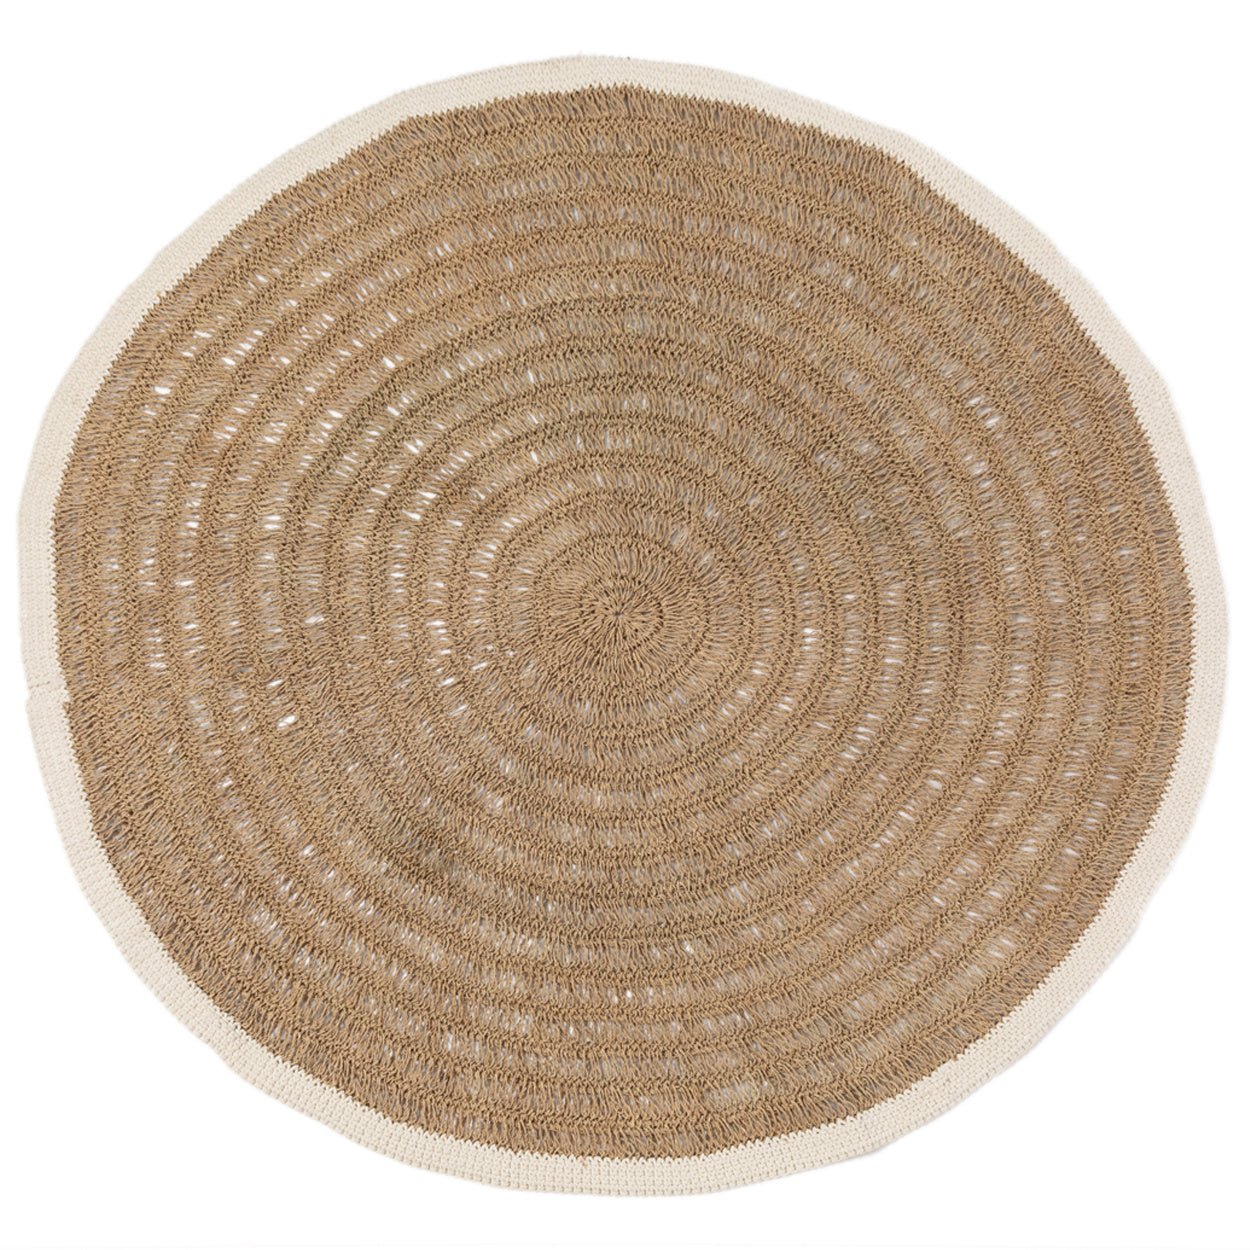 La alfombra redonda de pastos marinos y algodón - Blanco natural - 200